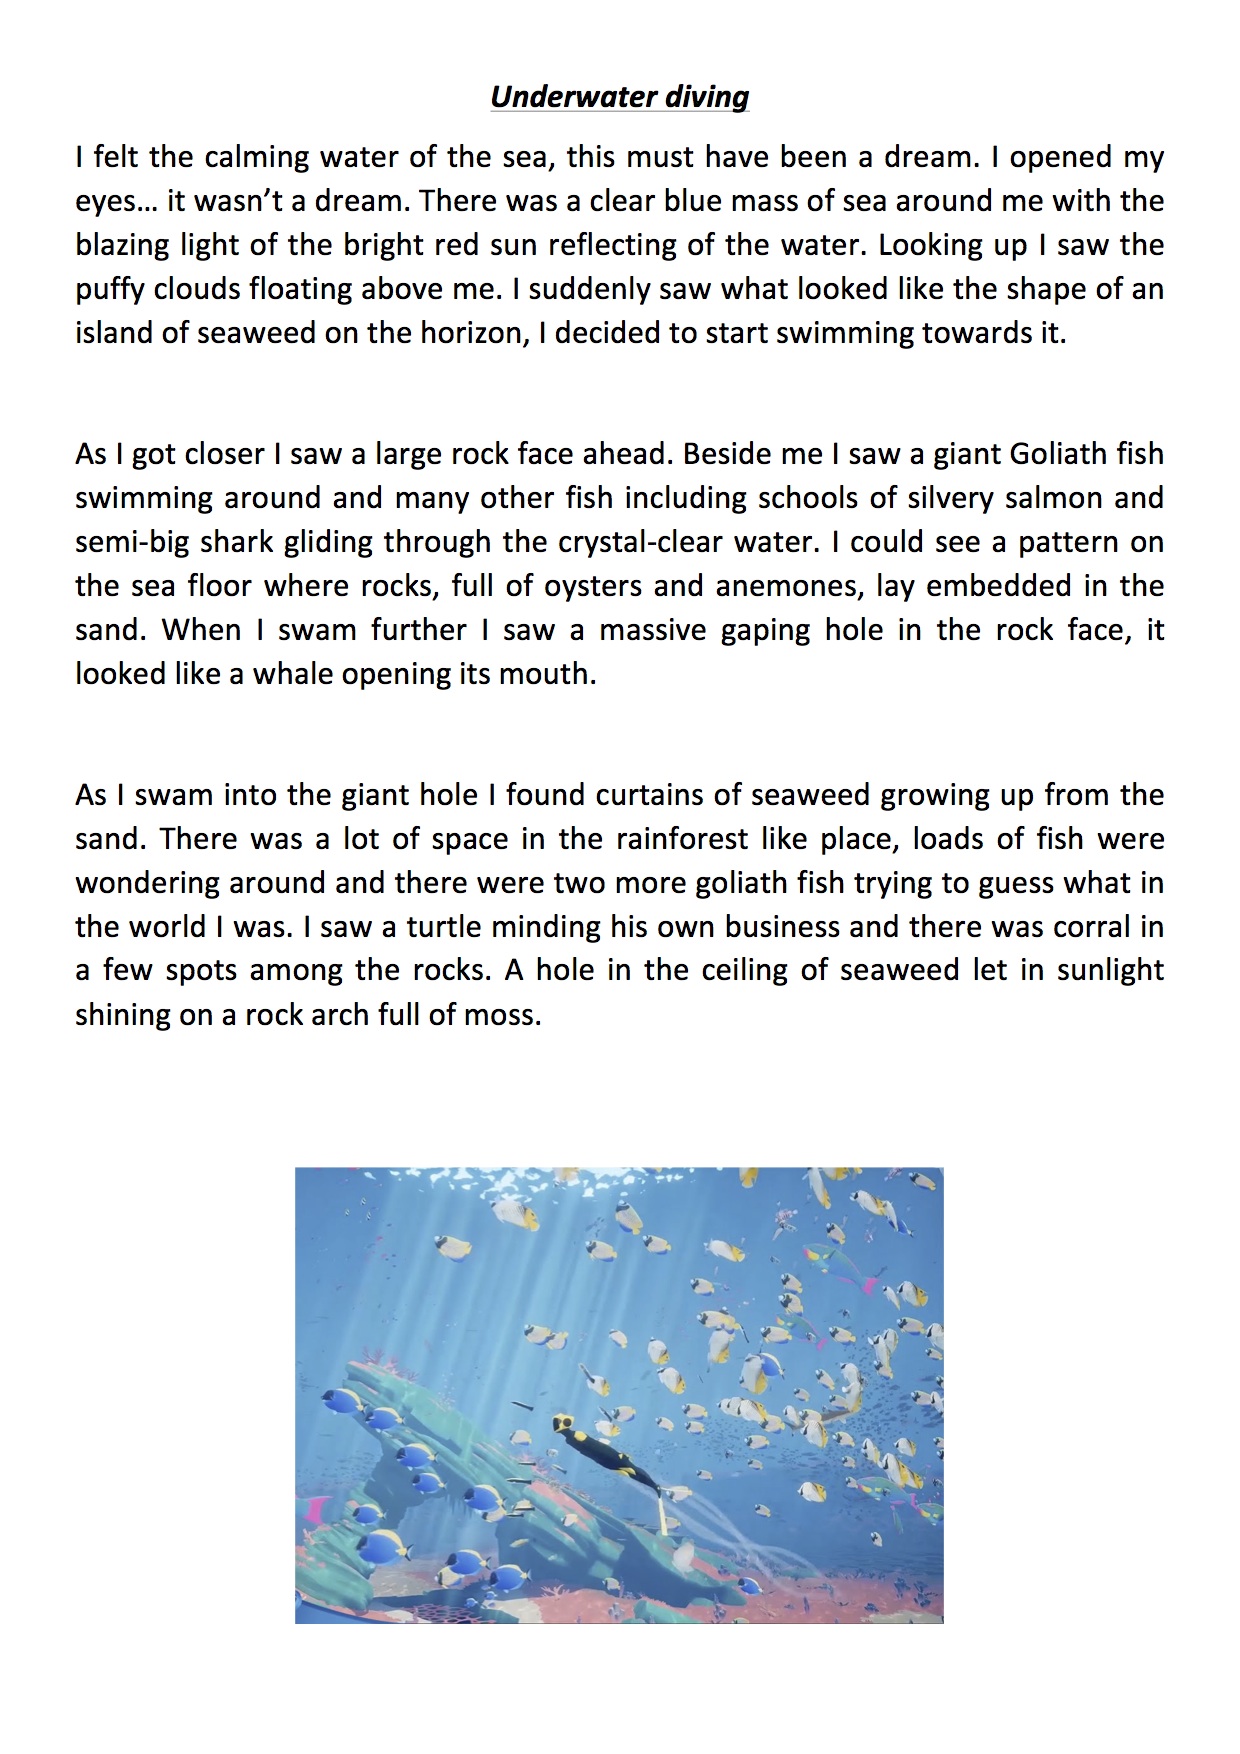 descriptive essay about the sea